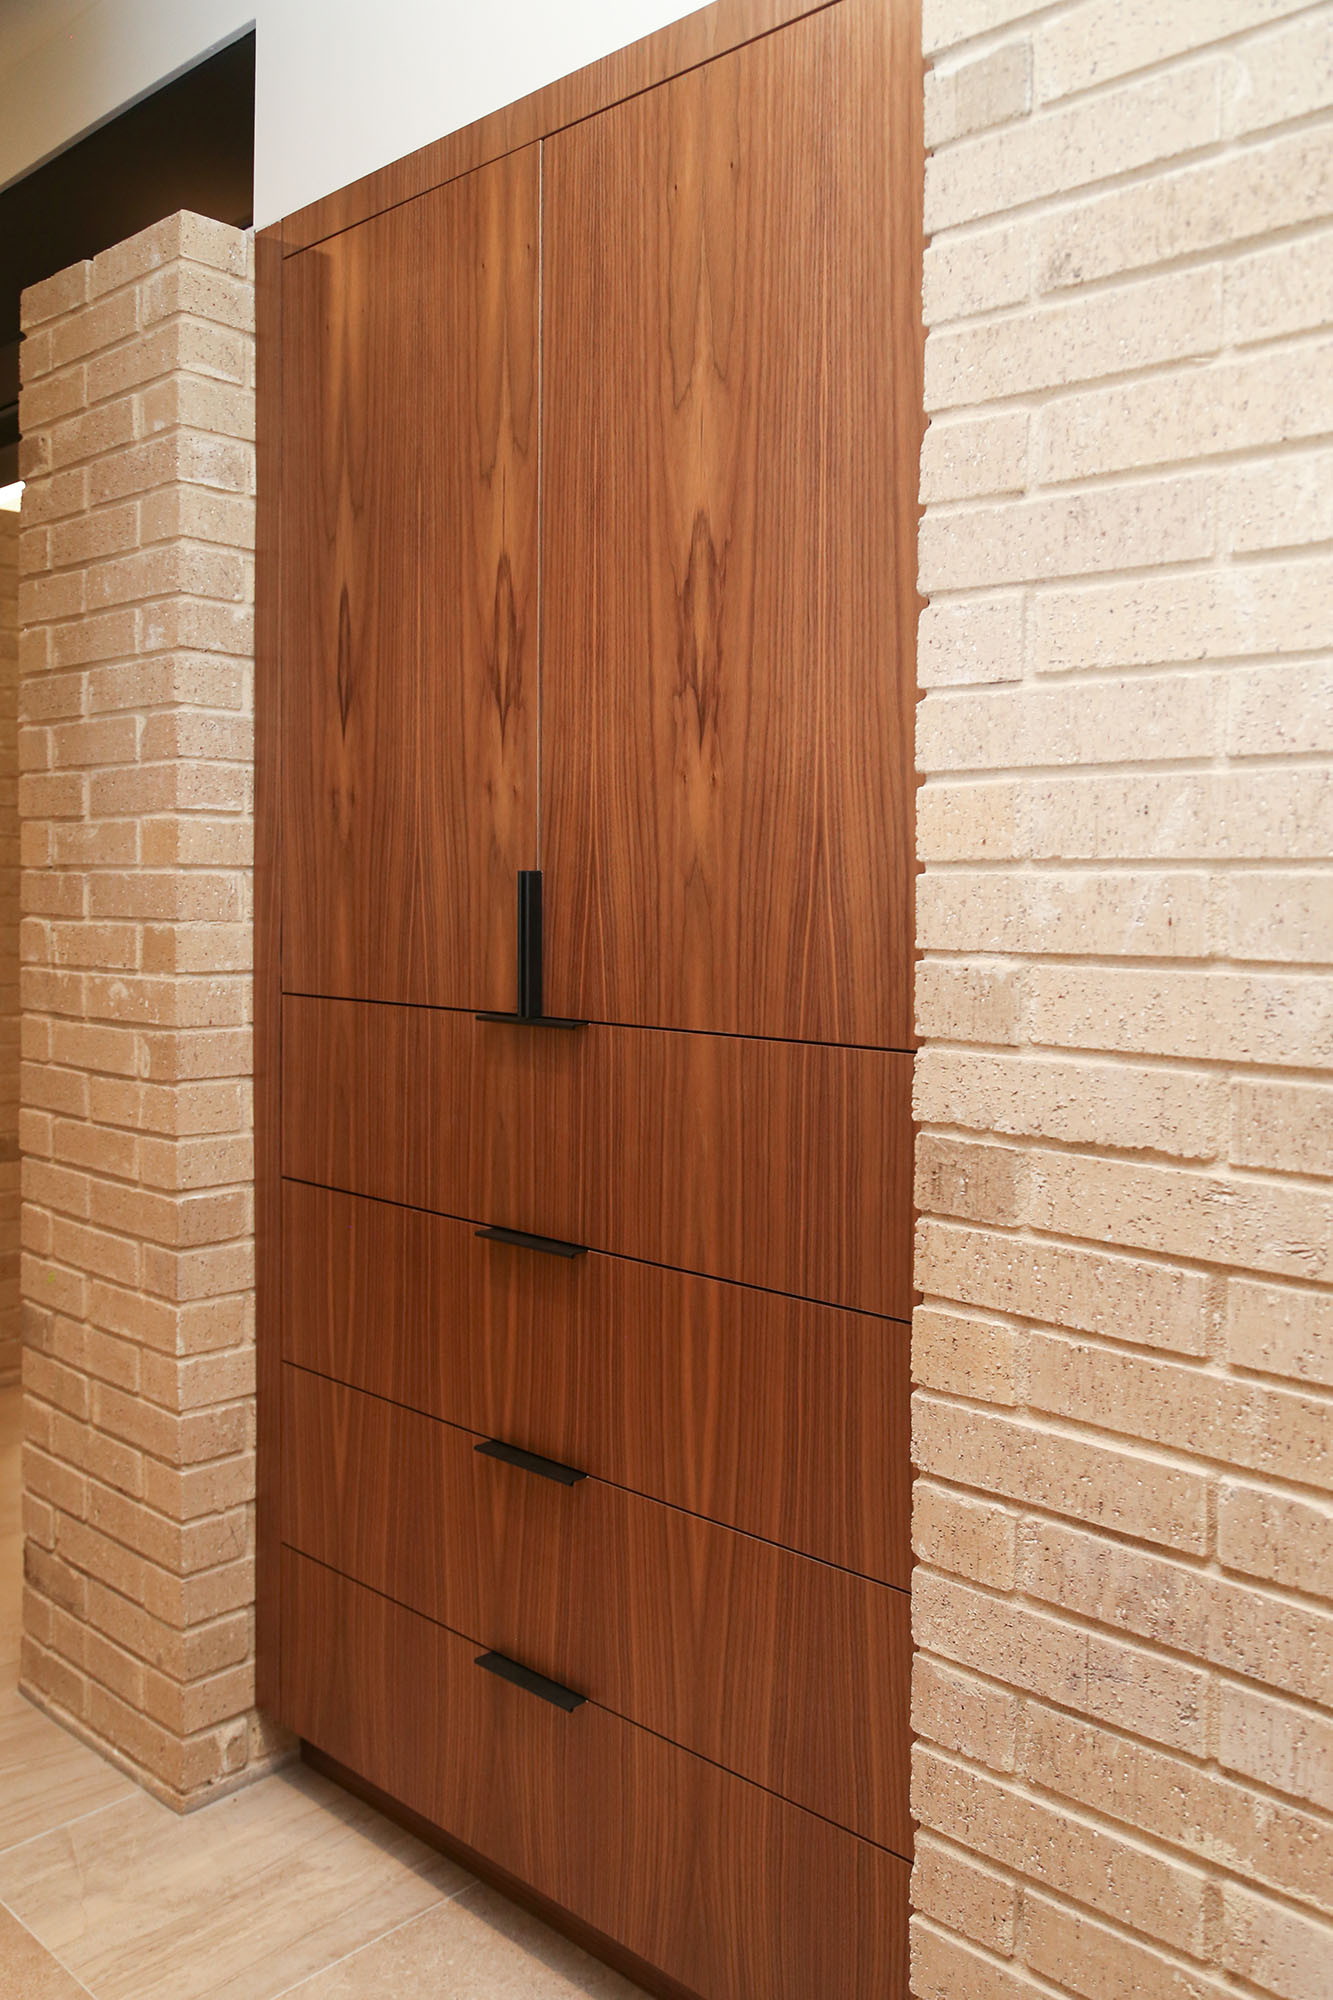 Tall Kitchen Cabinet Storage Recessed Brick Wall Elite Cabinets Tulsa Kitchen Cabinet Builder